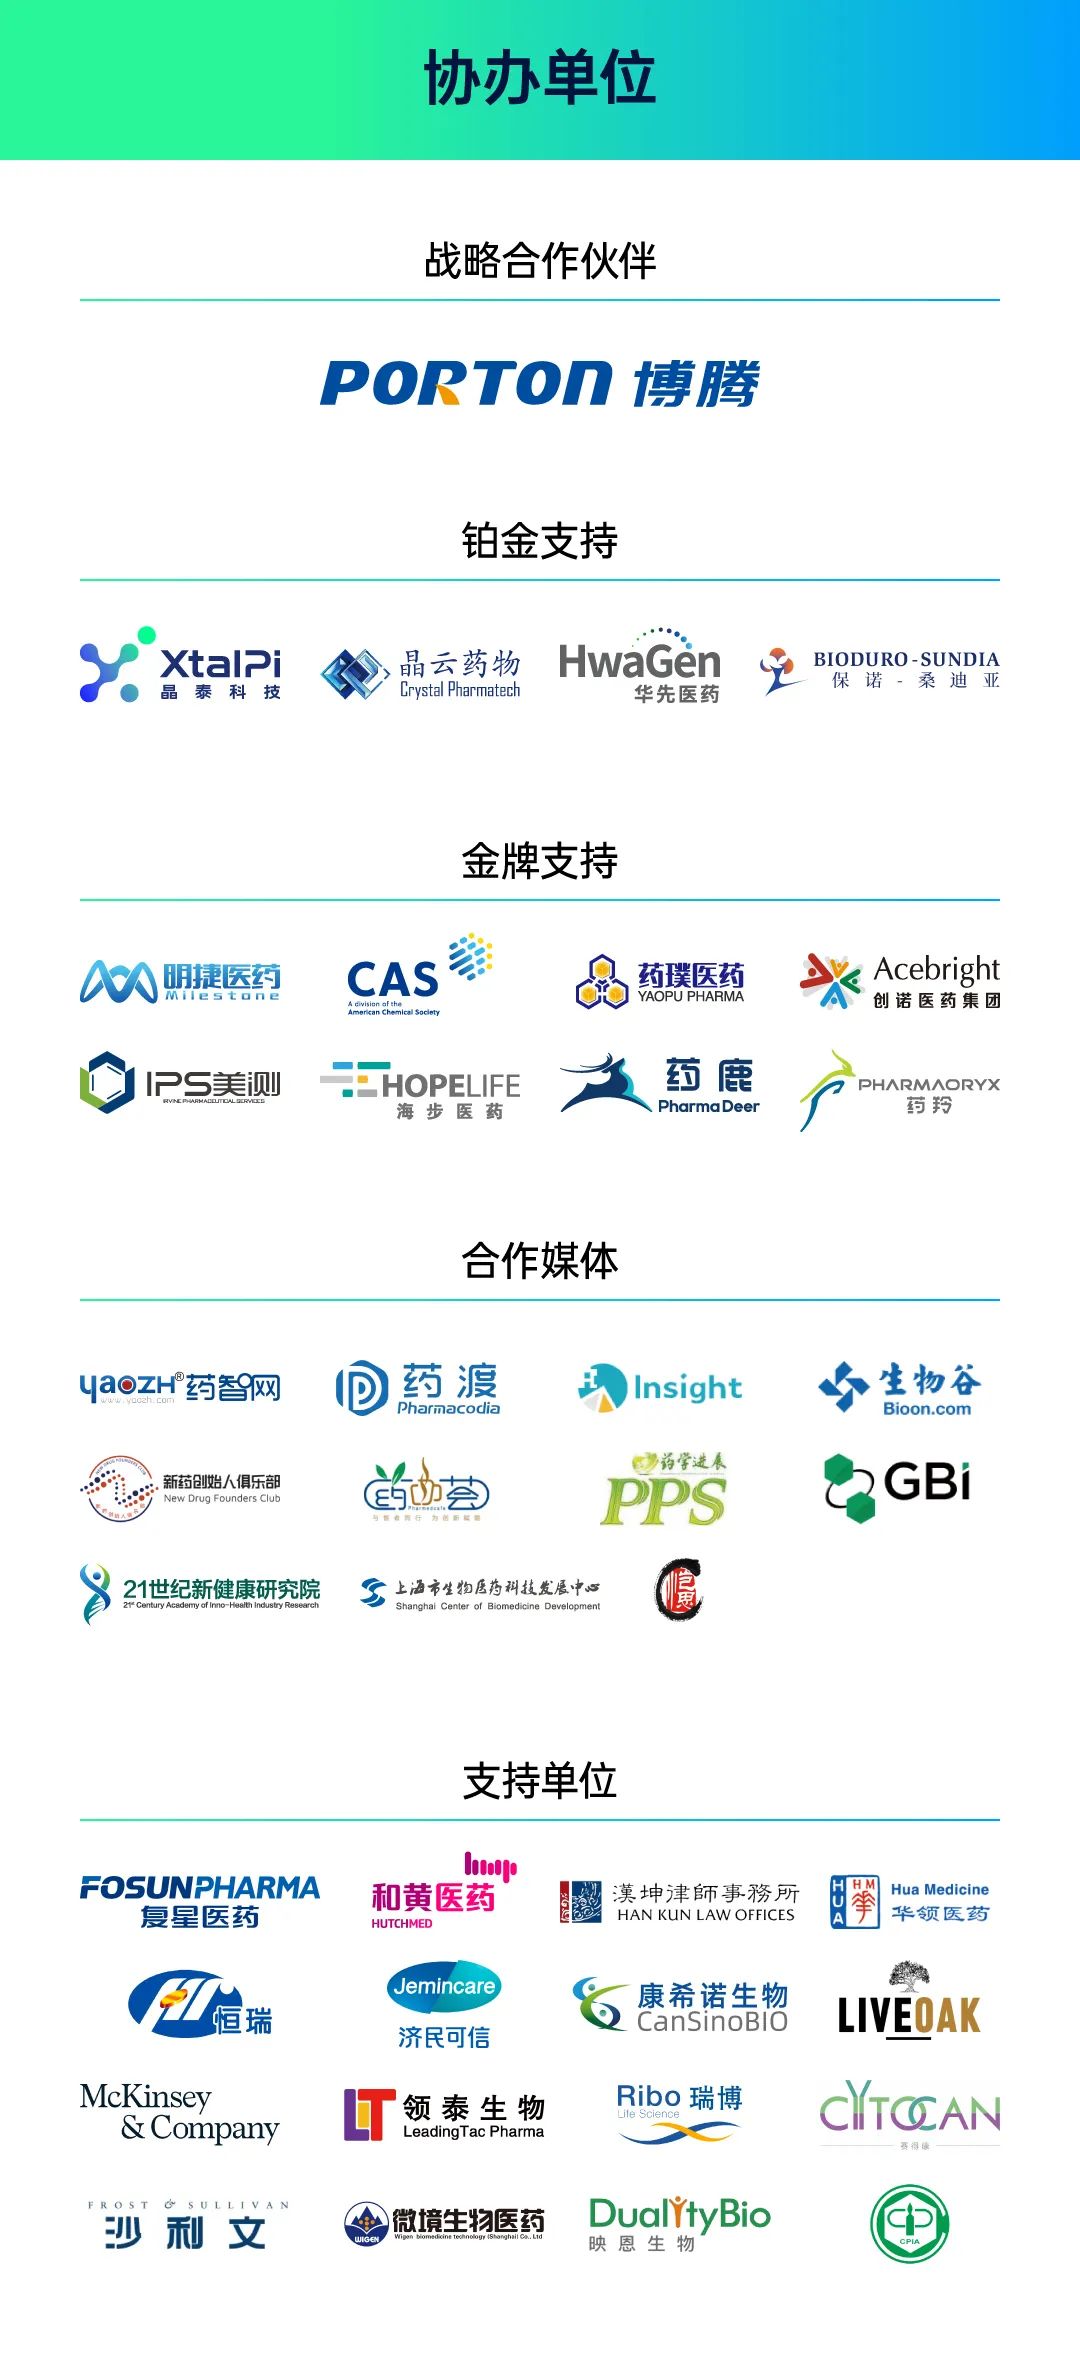 最后 1 天！第三届中国新药CMC高峰论坛报名通道今日关闭！